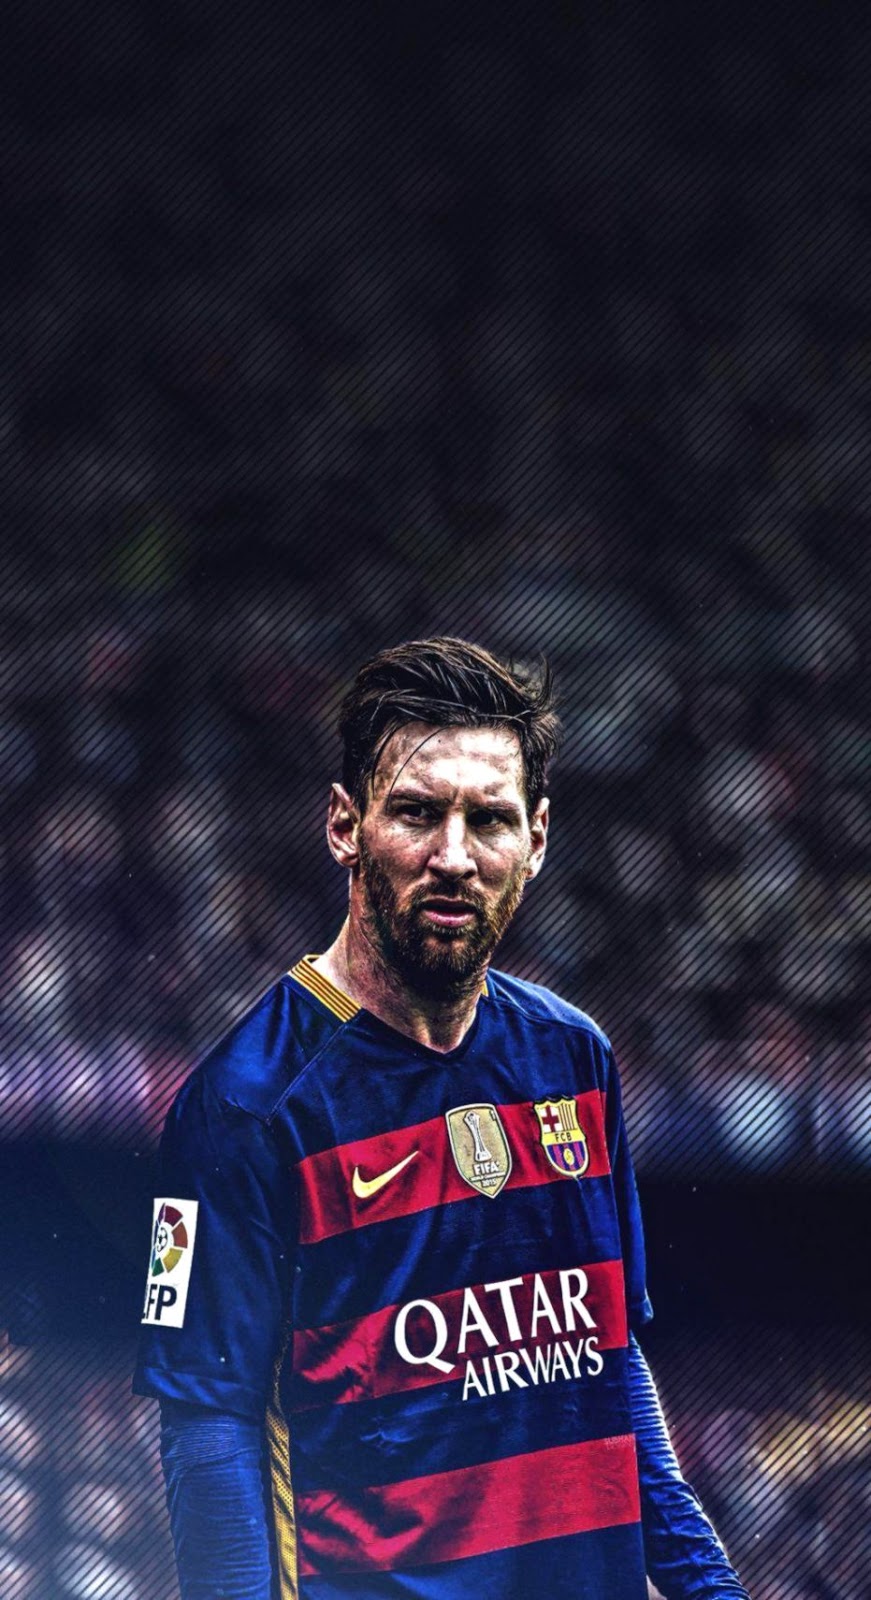 Bạn đang tìm kiếm một hình nền đẹp cho iPhone của mình? Hãy xem qua bức ảnh Messi wallpaper iPhone 4k chất lượng cao này để cập nhật cho chiếc điện thoại của bạn với hình ảnh người vô địch đầy phong cách và sức mạnh của Messi.